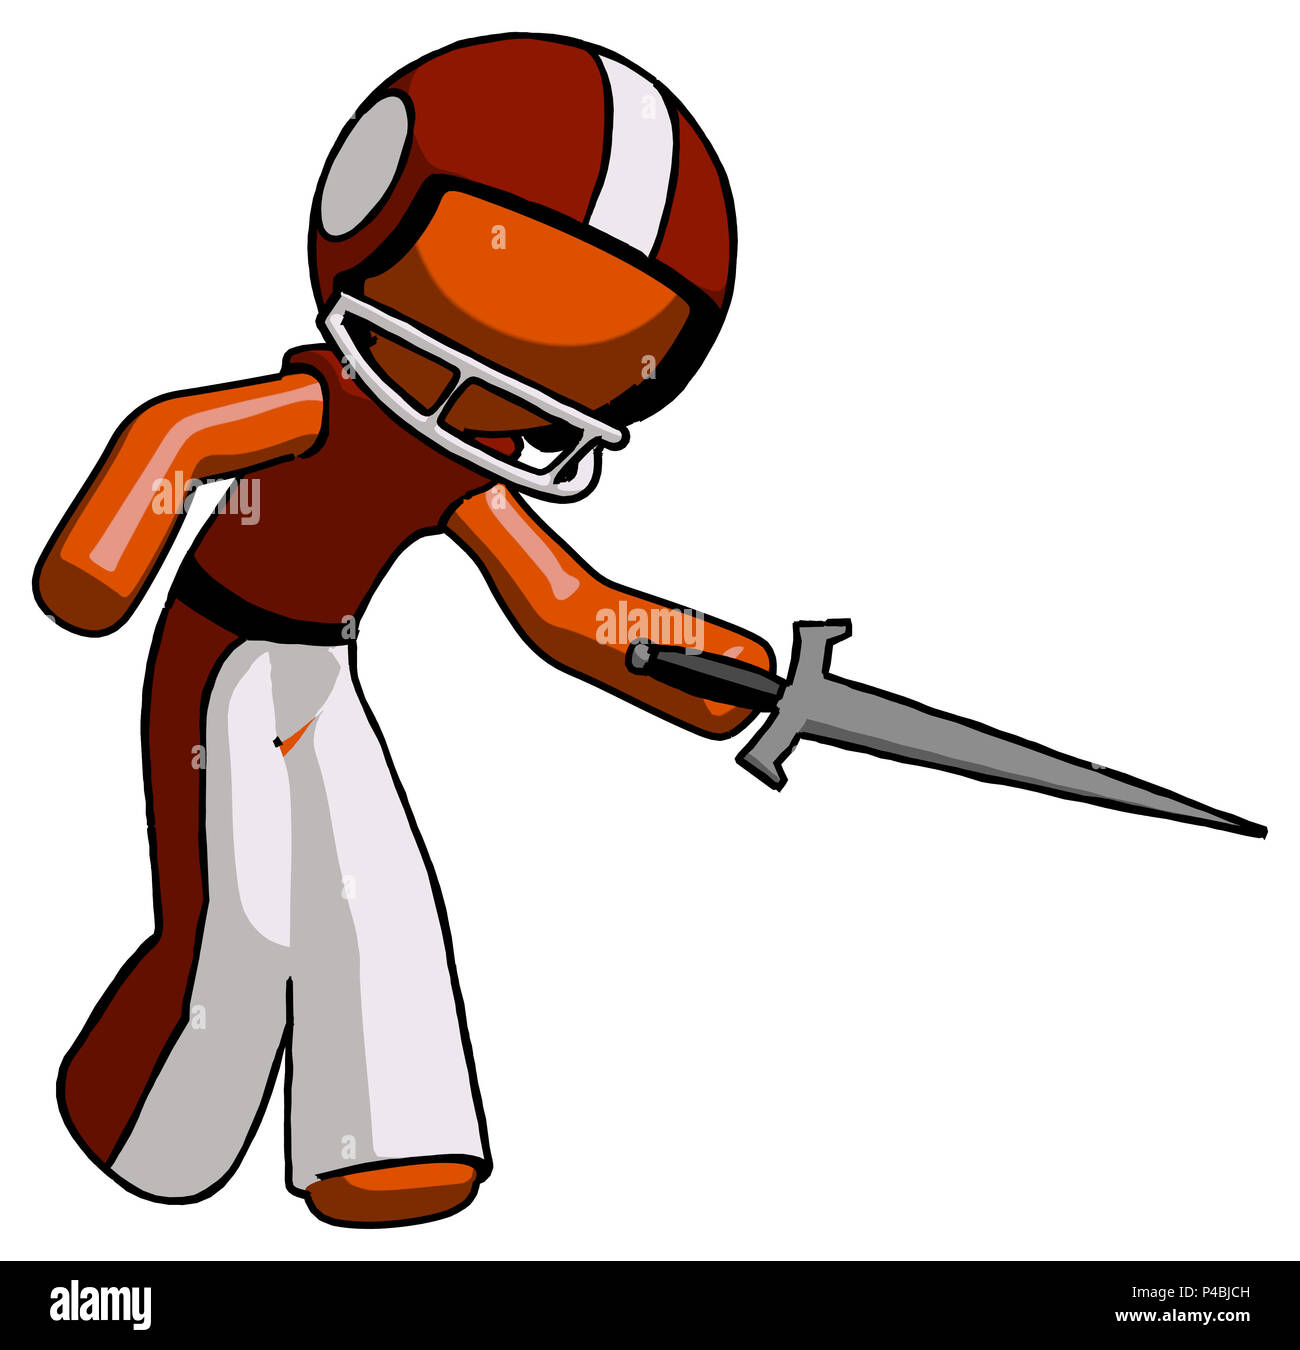 Orange football player man sword pose stabbing or jabbing. Stock Photo